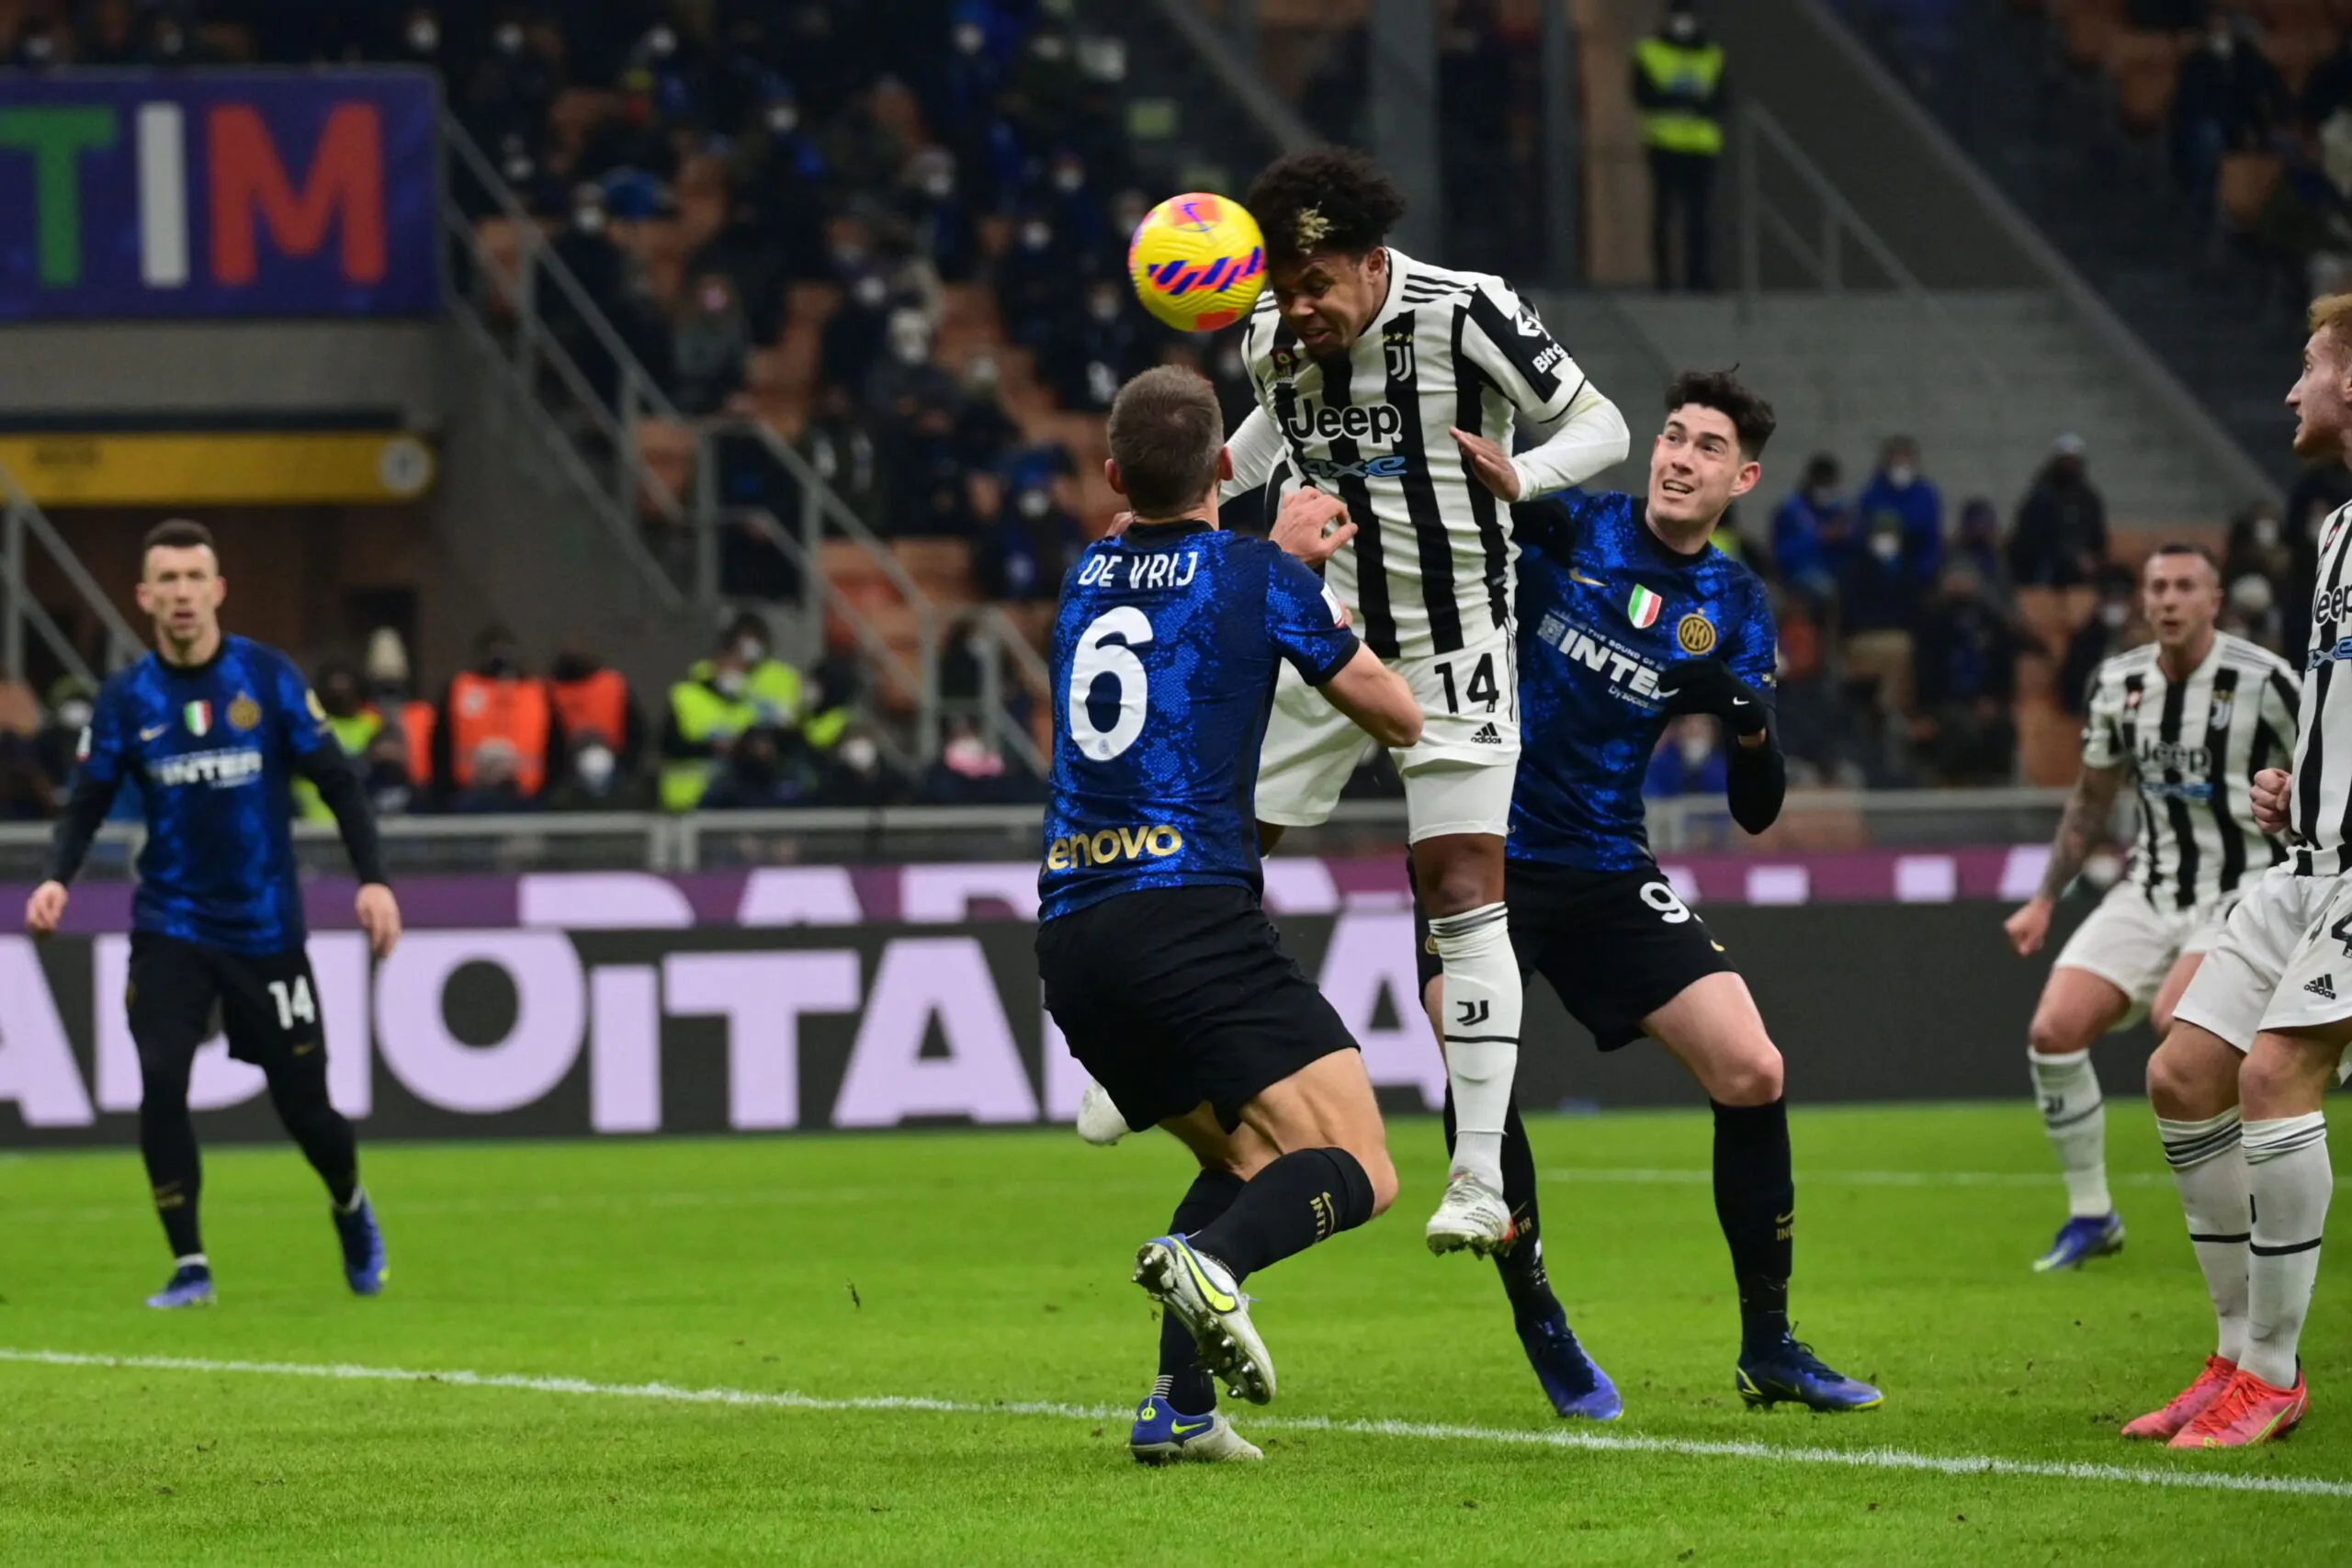 “Speriamo non finisca ai rigori”: Mentana stuzzica la Juventus